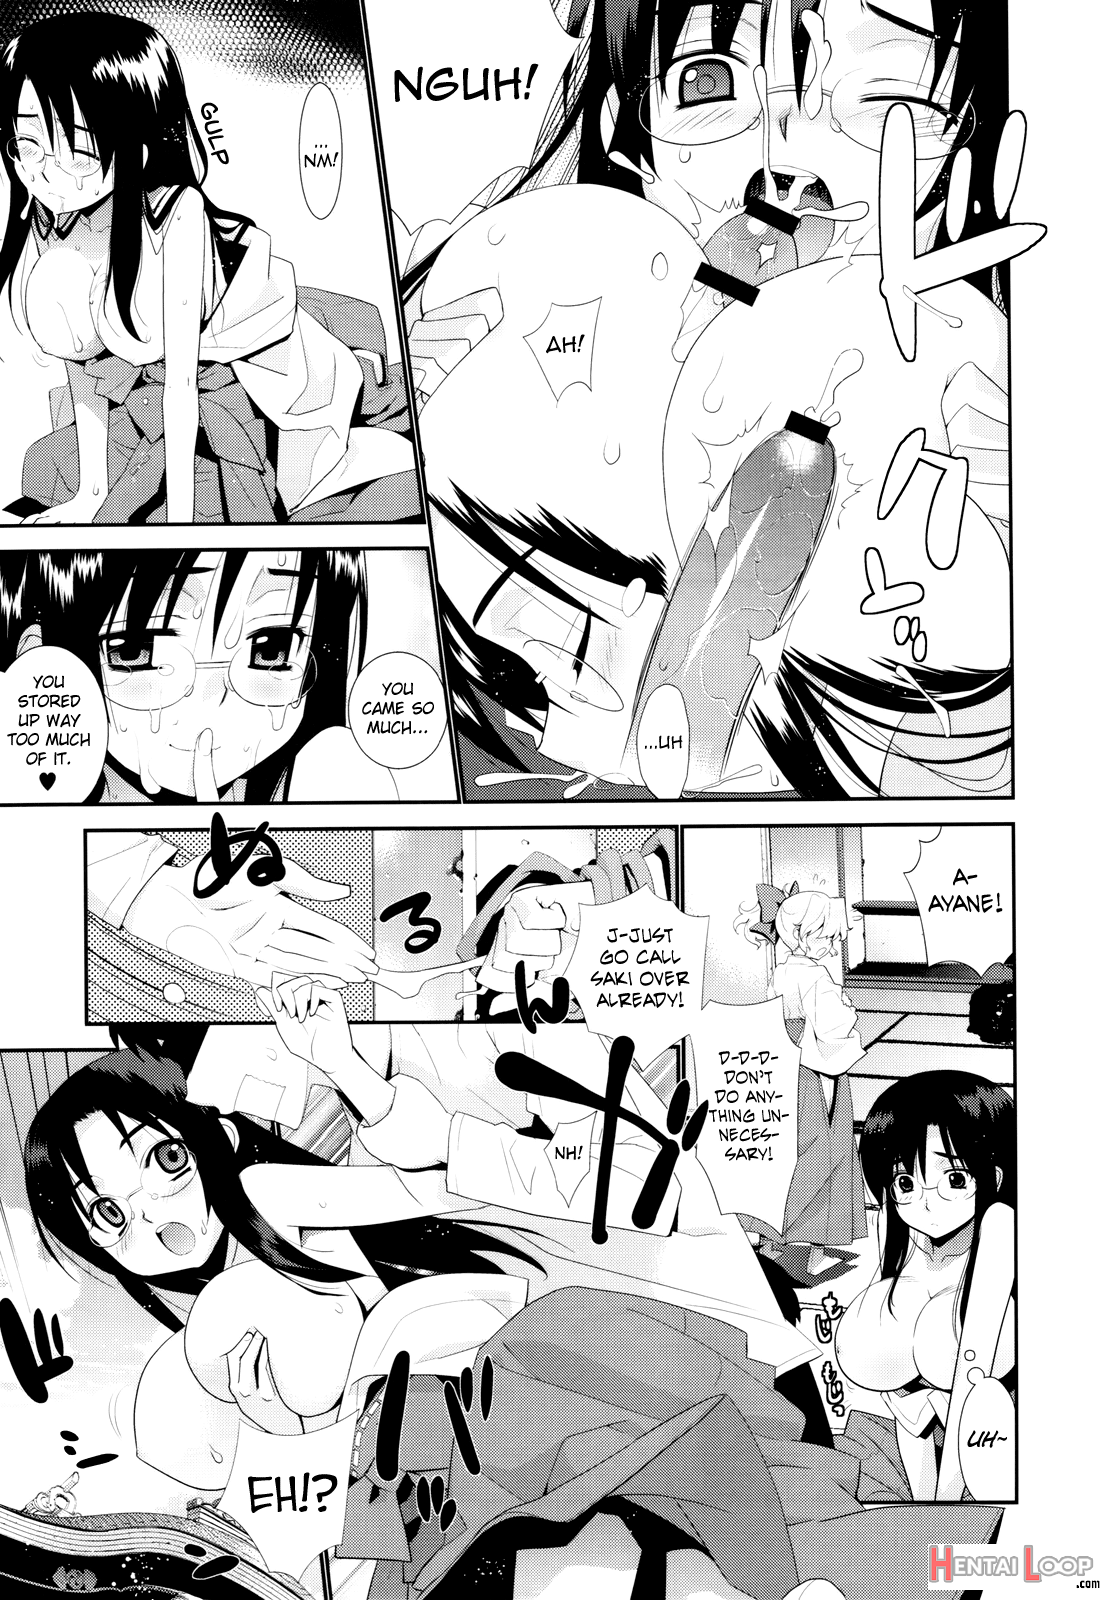 Kanara-sama No Nichijou San + Shiori page 7